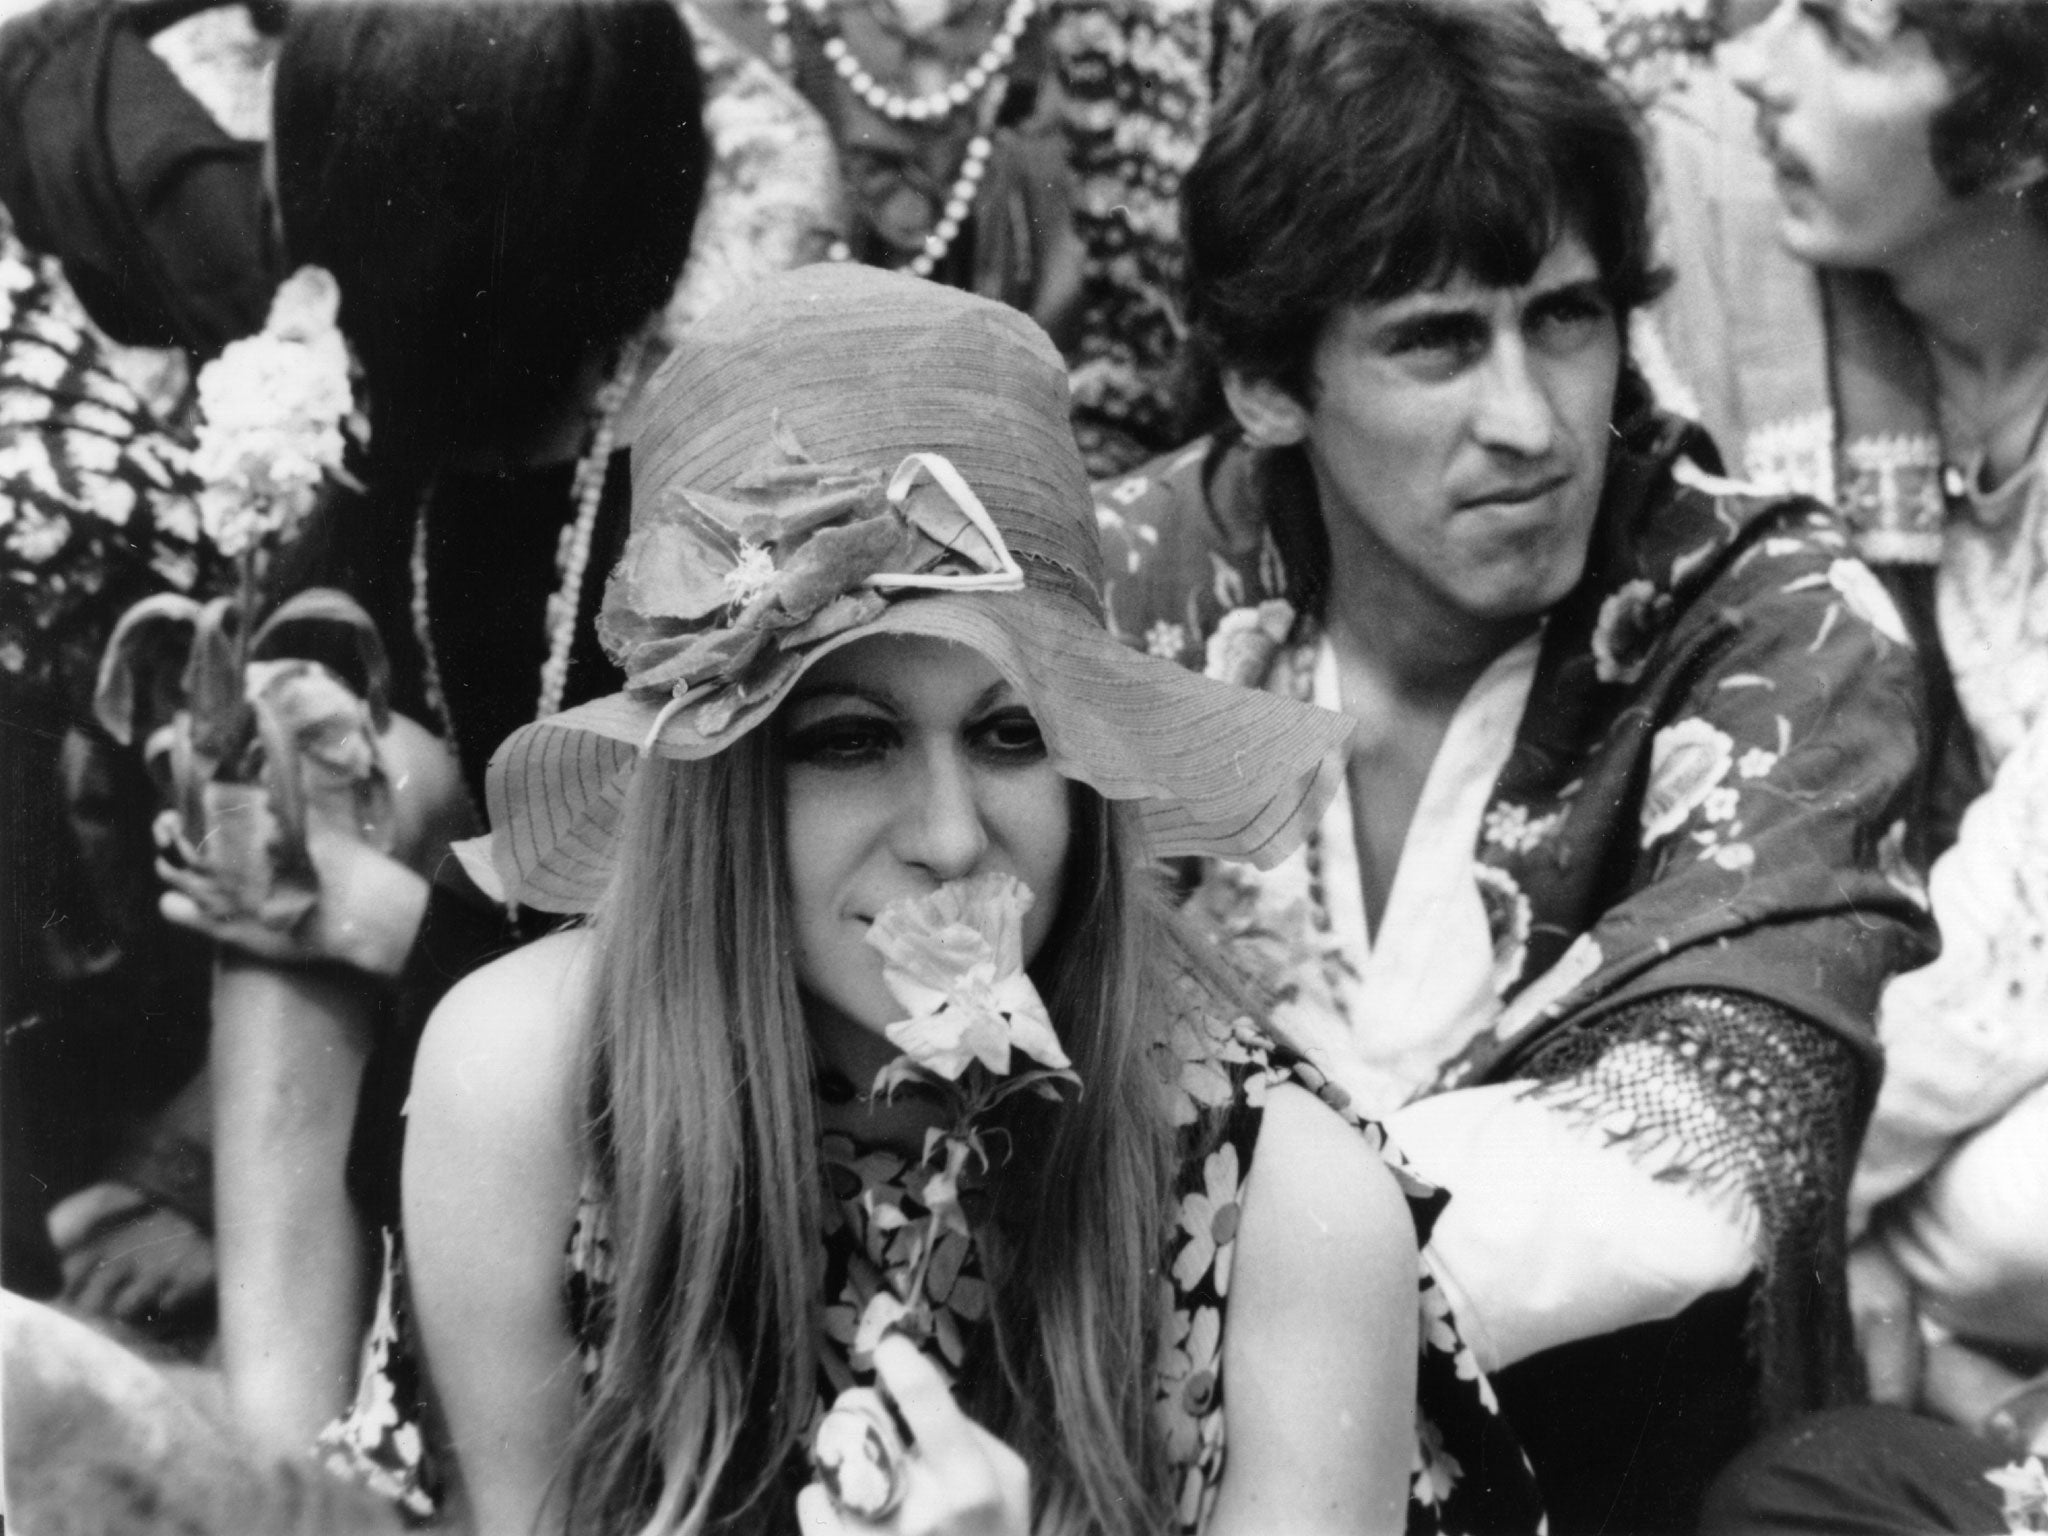 1960s hippies drugs